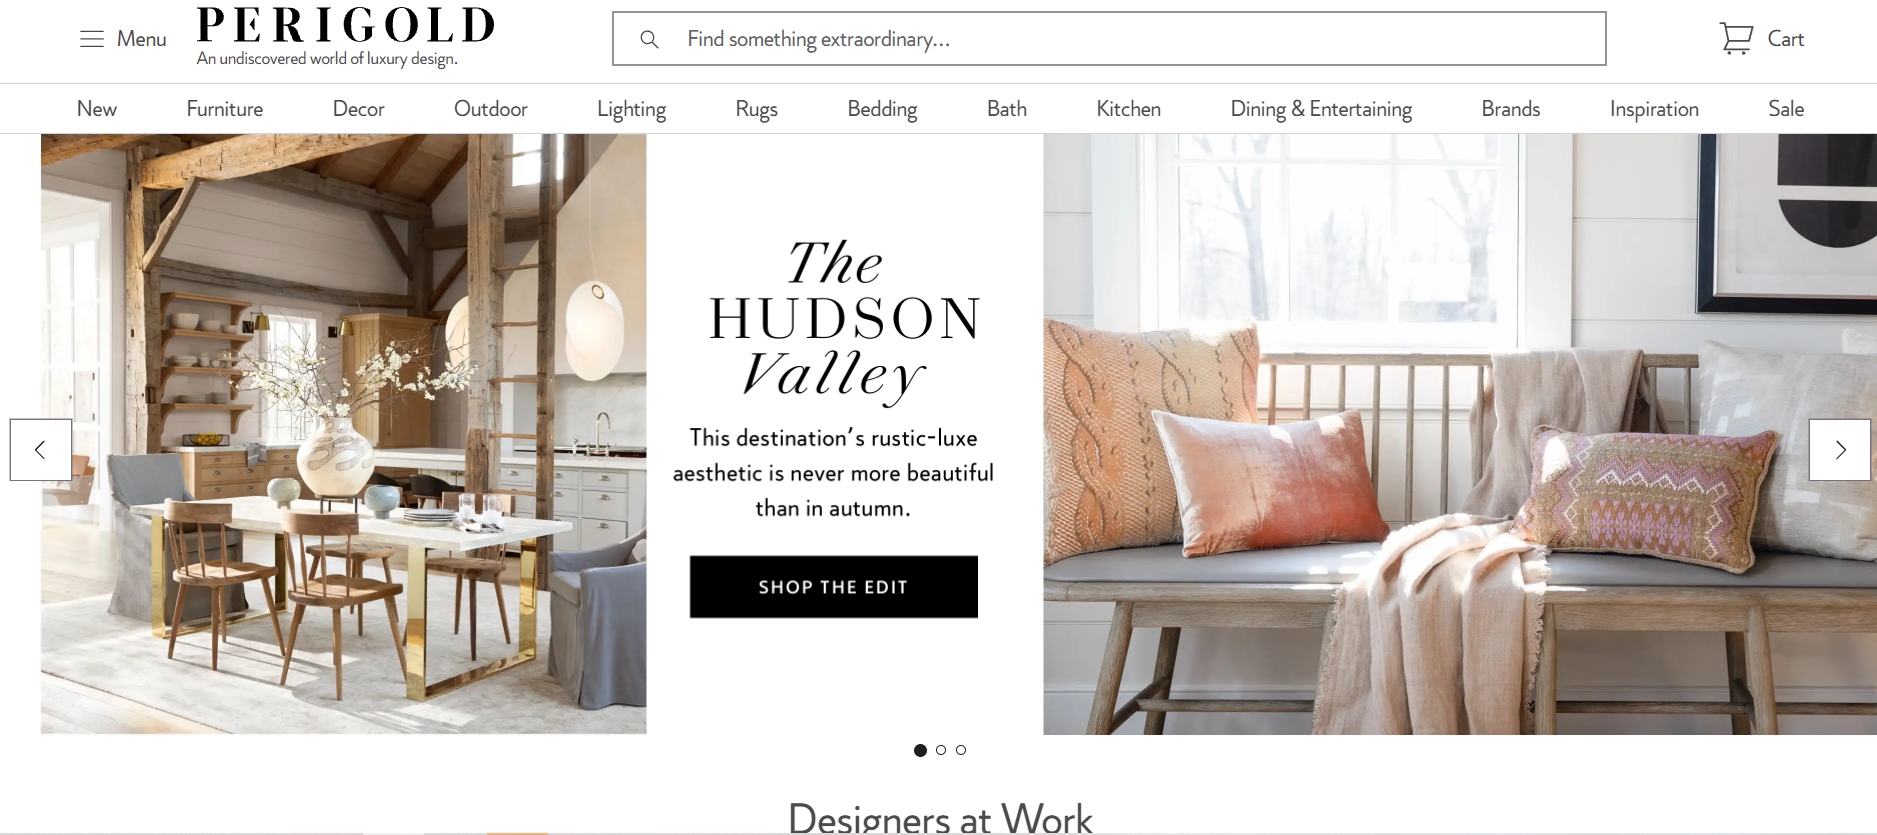 Furniture Website Design: Examples & Tips | Fireart Studio